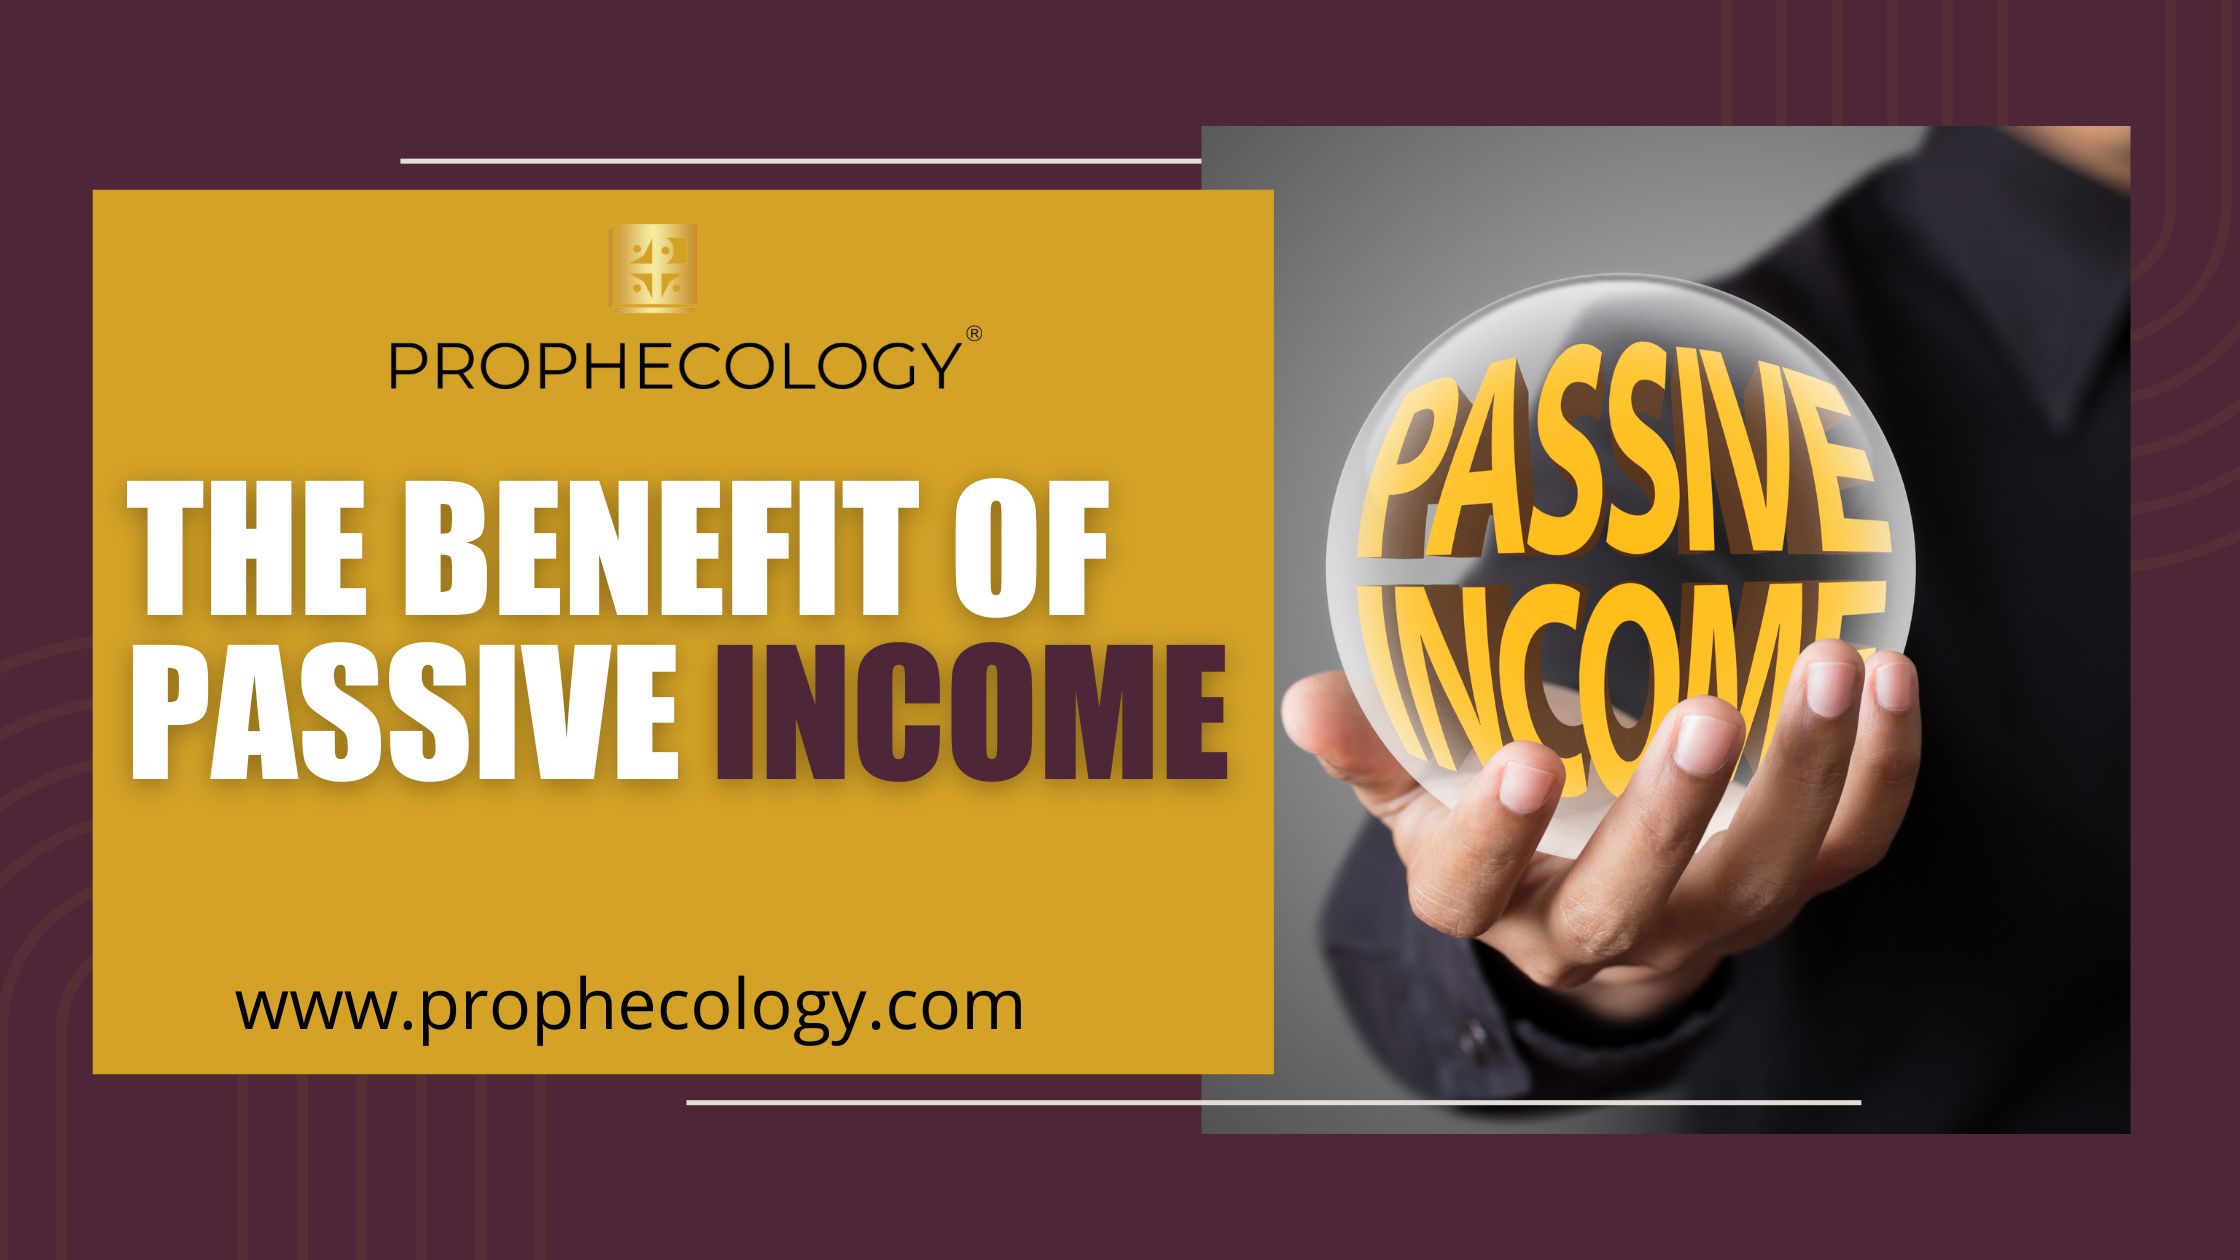 Passive income, income, benefit of passive income